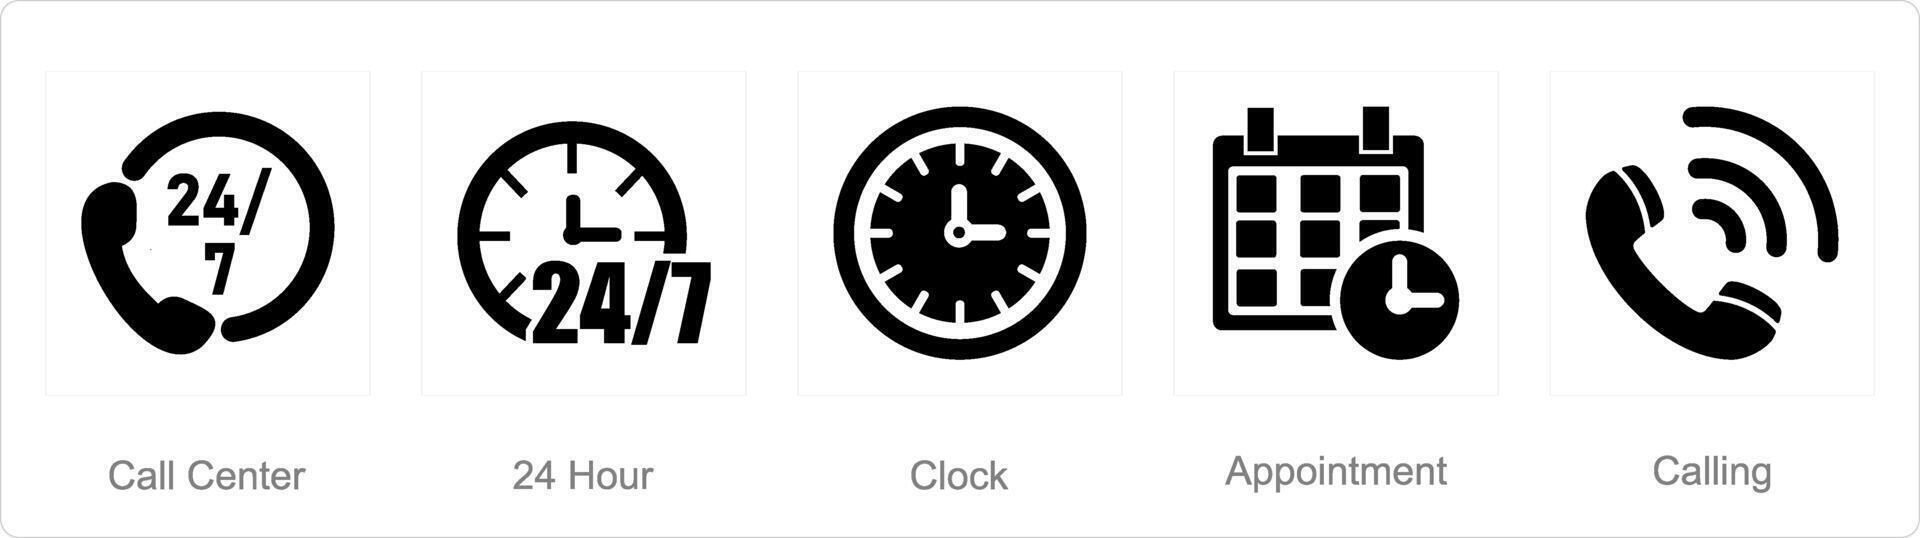 un' impostato di 5 contatto icone come chiamata centro, 24 ora, orologio vettore